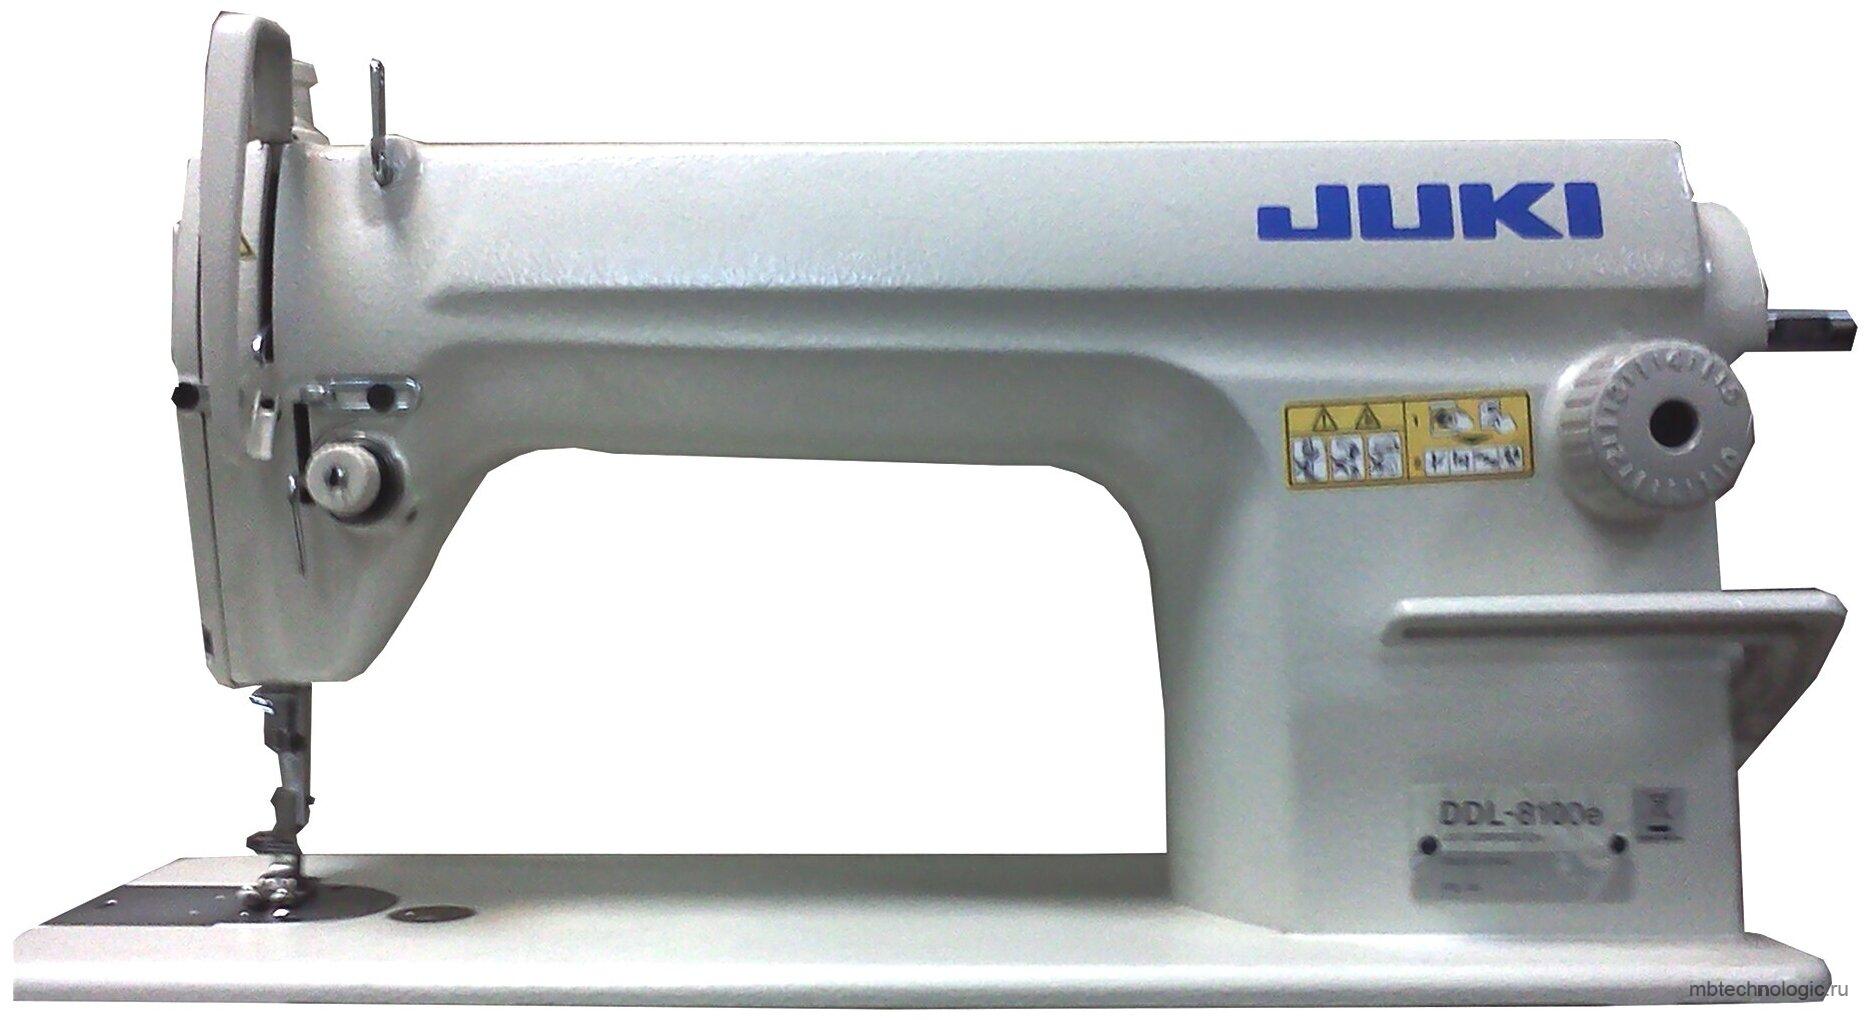 Juki DDL-8100E